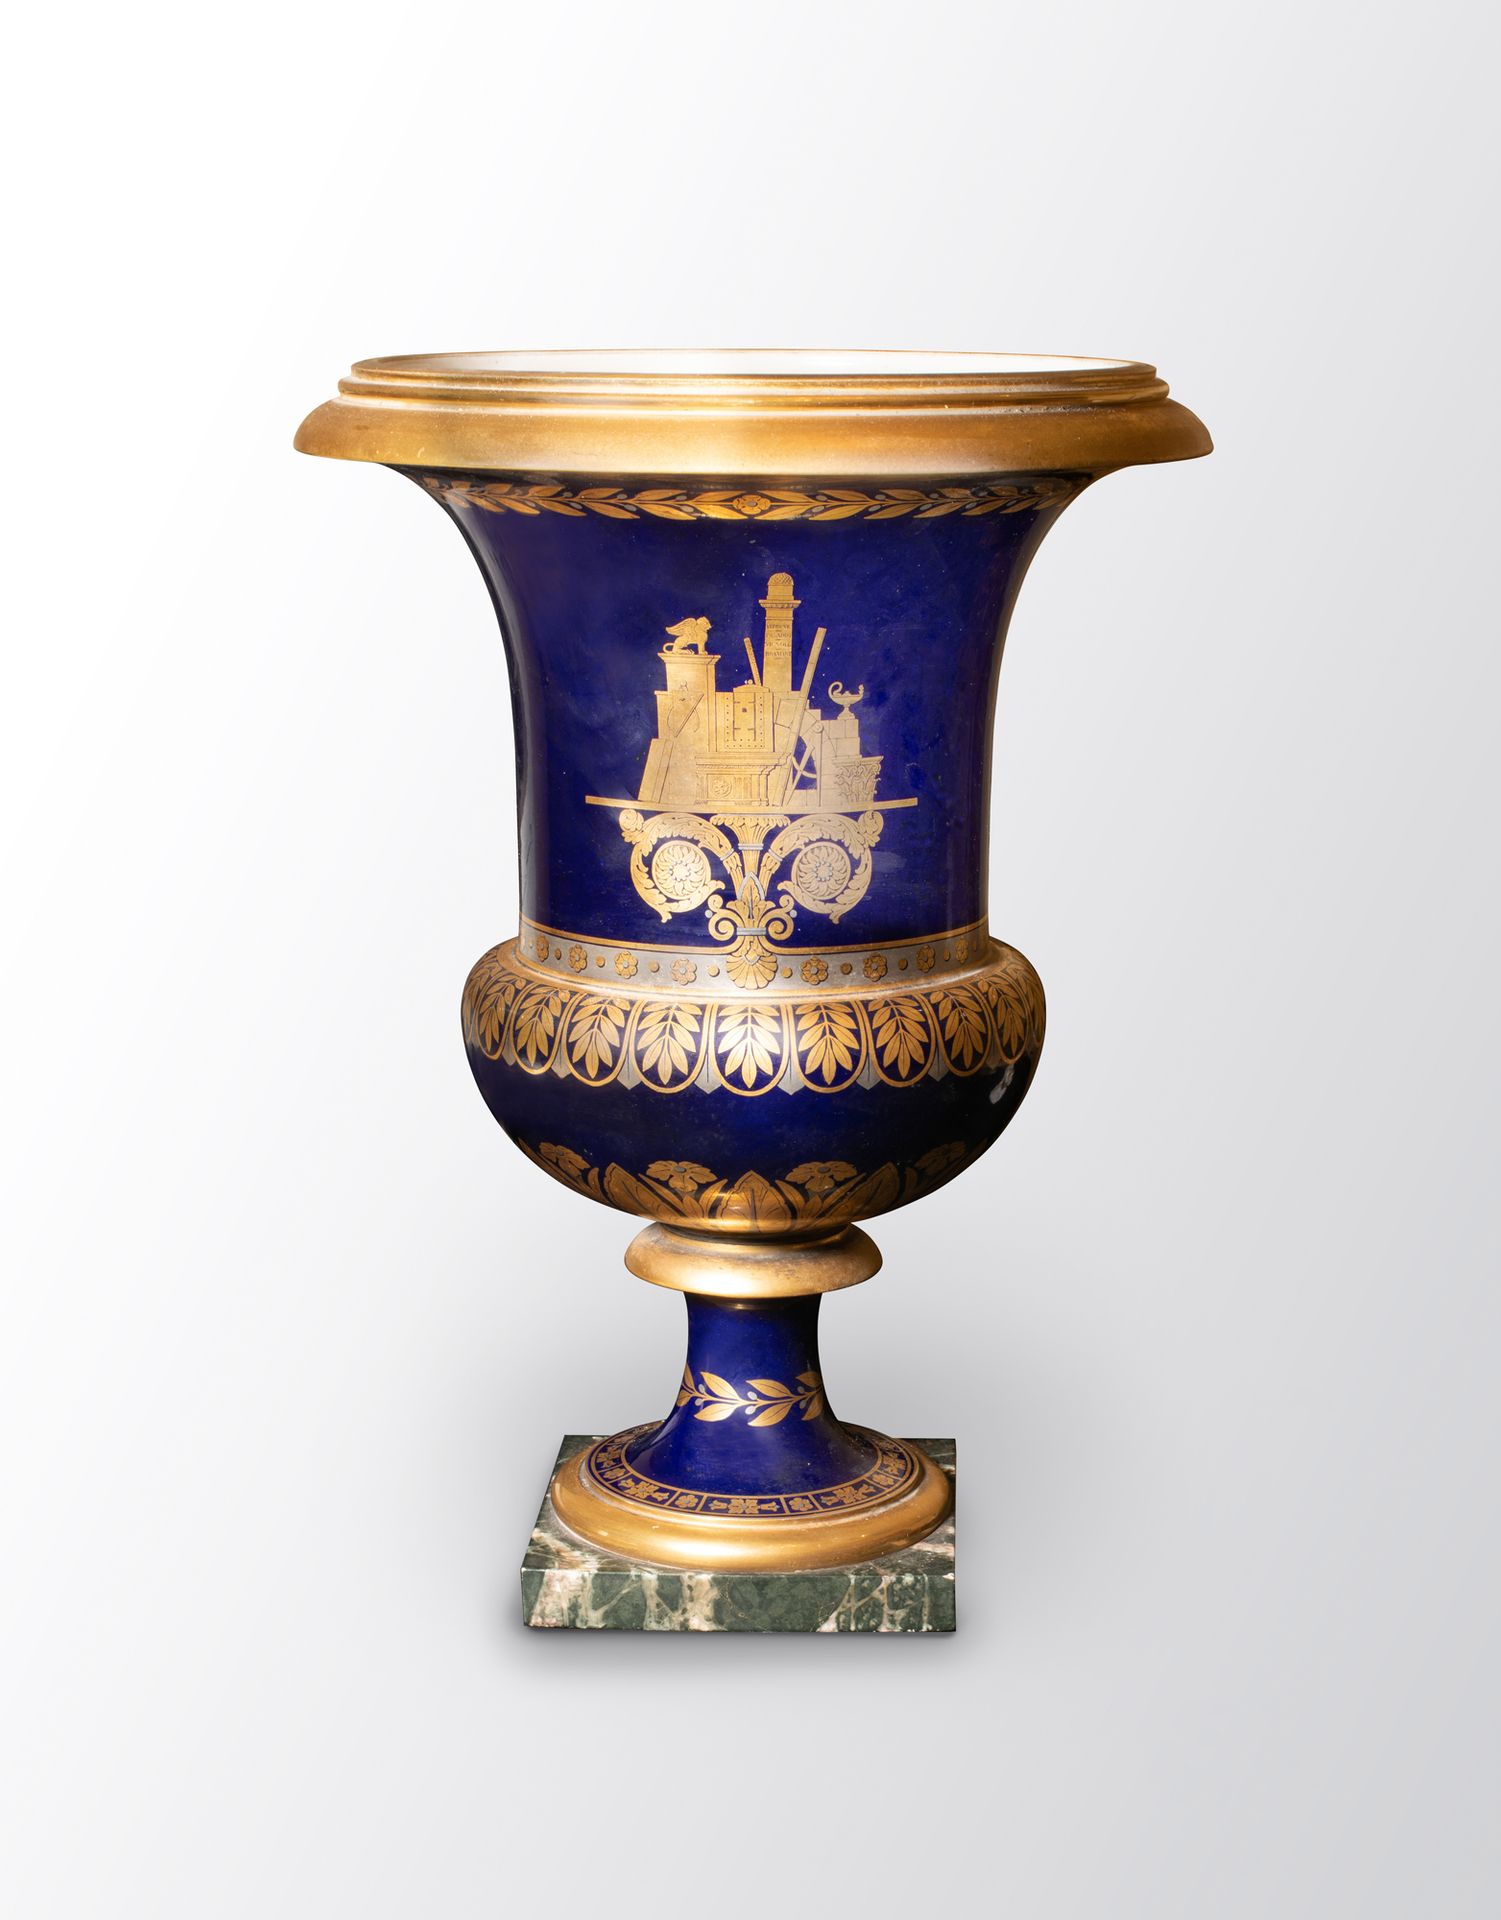 ǞǞǞ 美丽的美第奇花瓶-第三尺寸-硬瓷，蓝色背景，一侧用黄金和铂金装饰